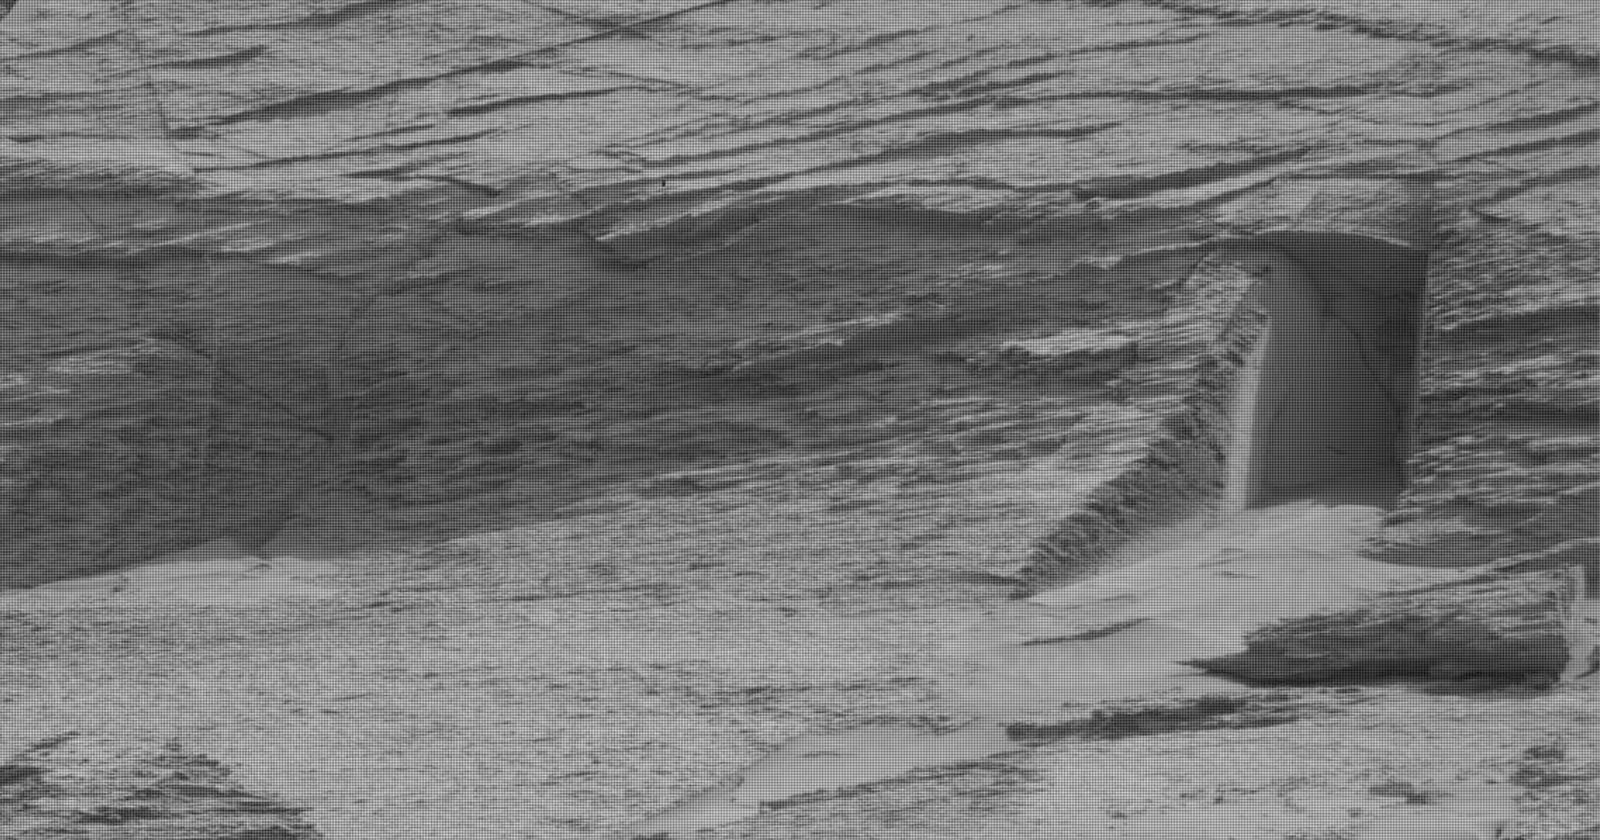  mars curiosity rover snaps photo doorway 